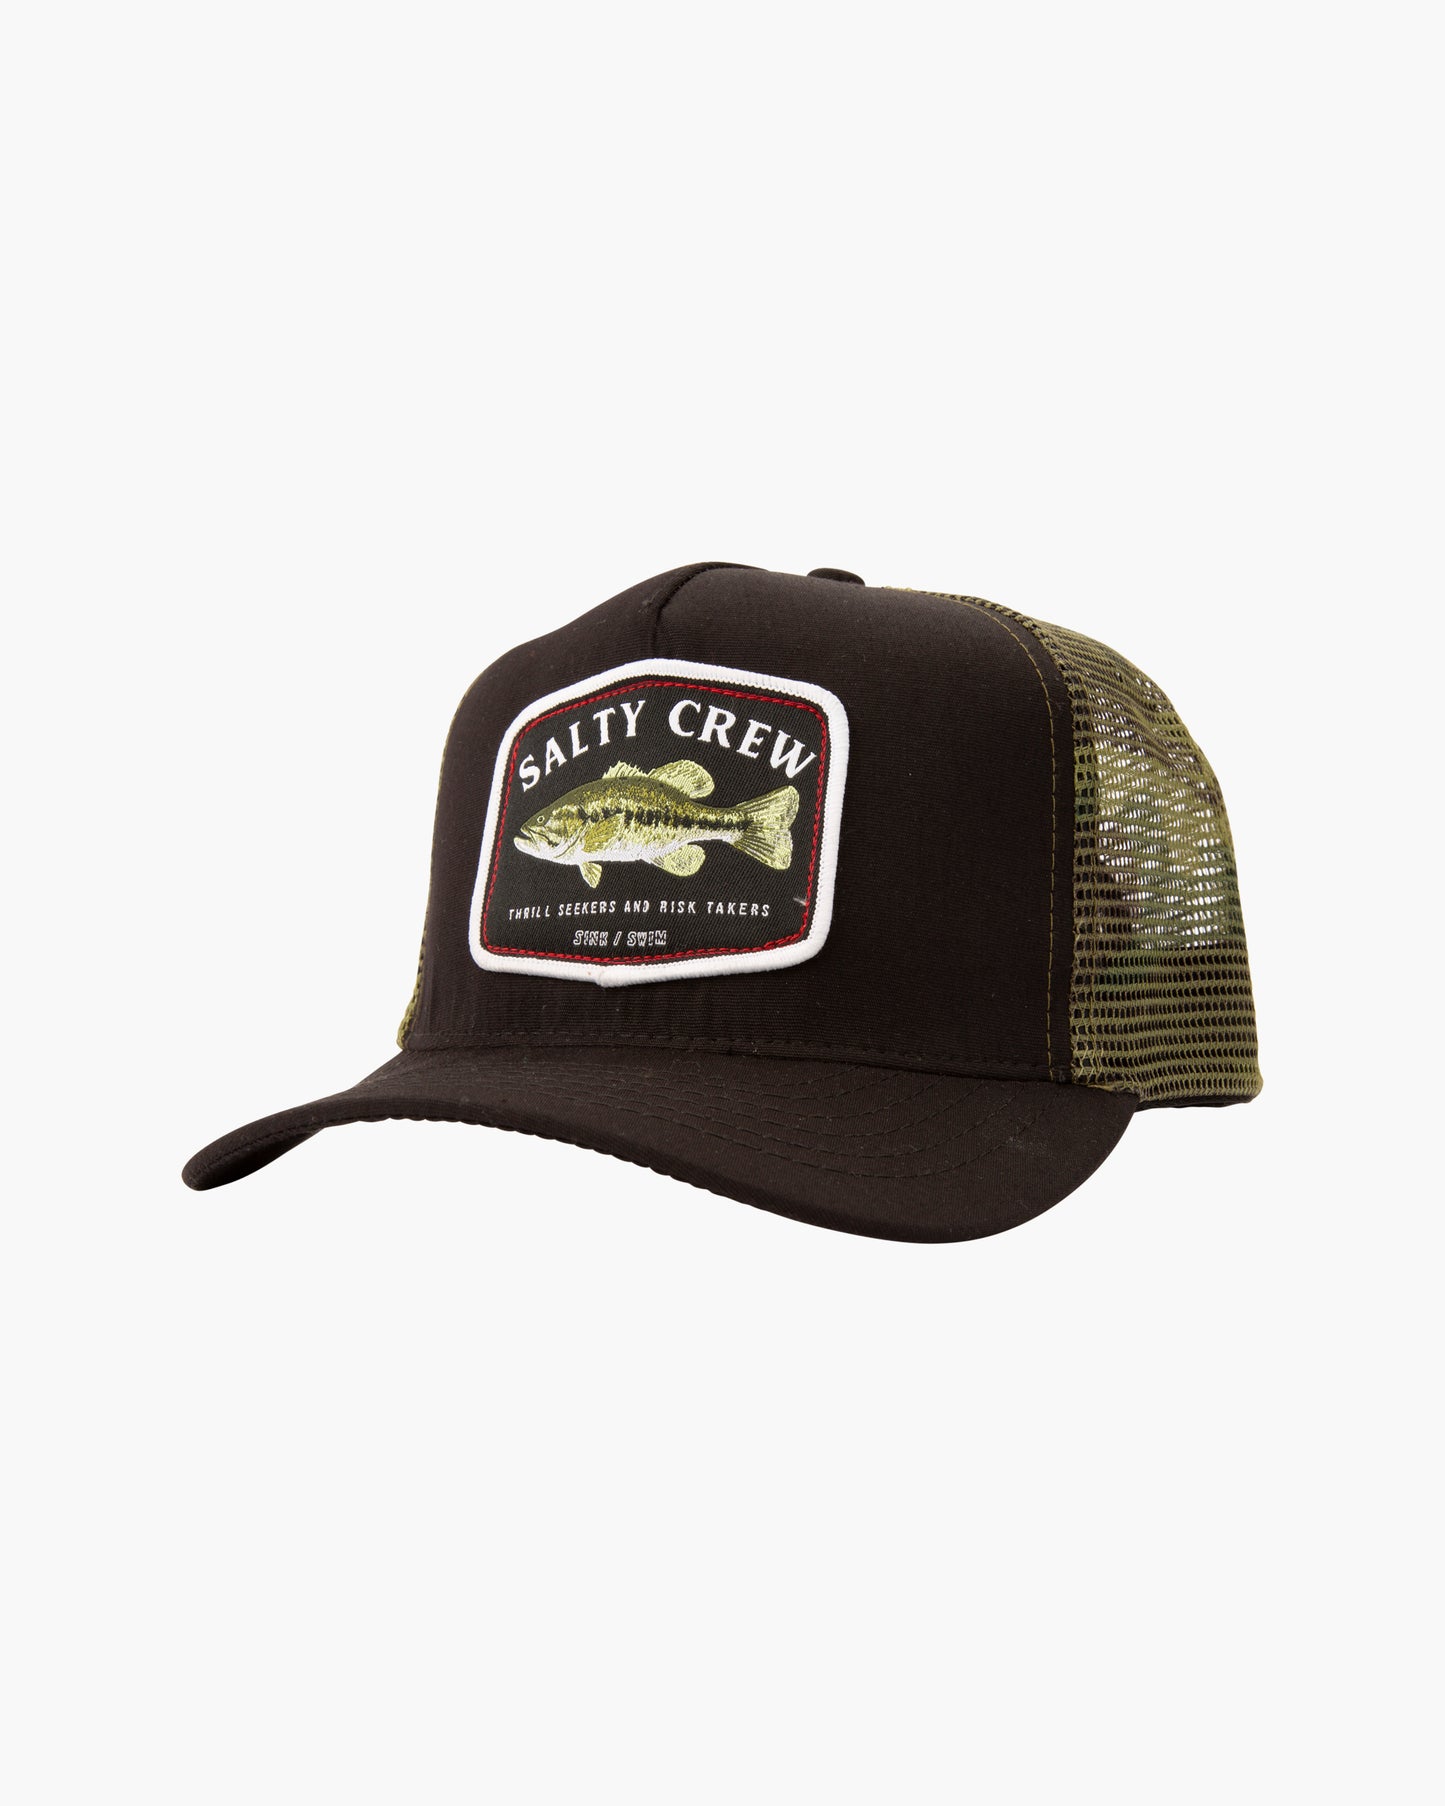 Salty crew Men's Hats BIGMOUTH TRUCKER in Black/Camo